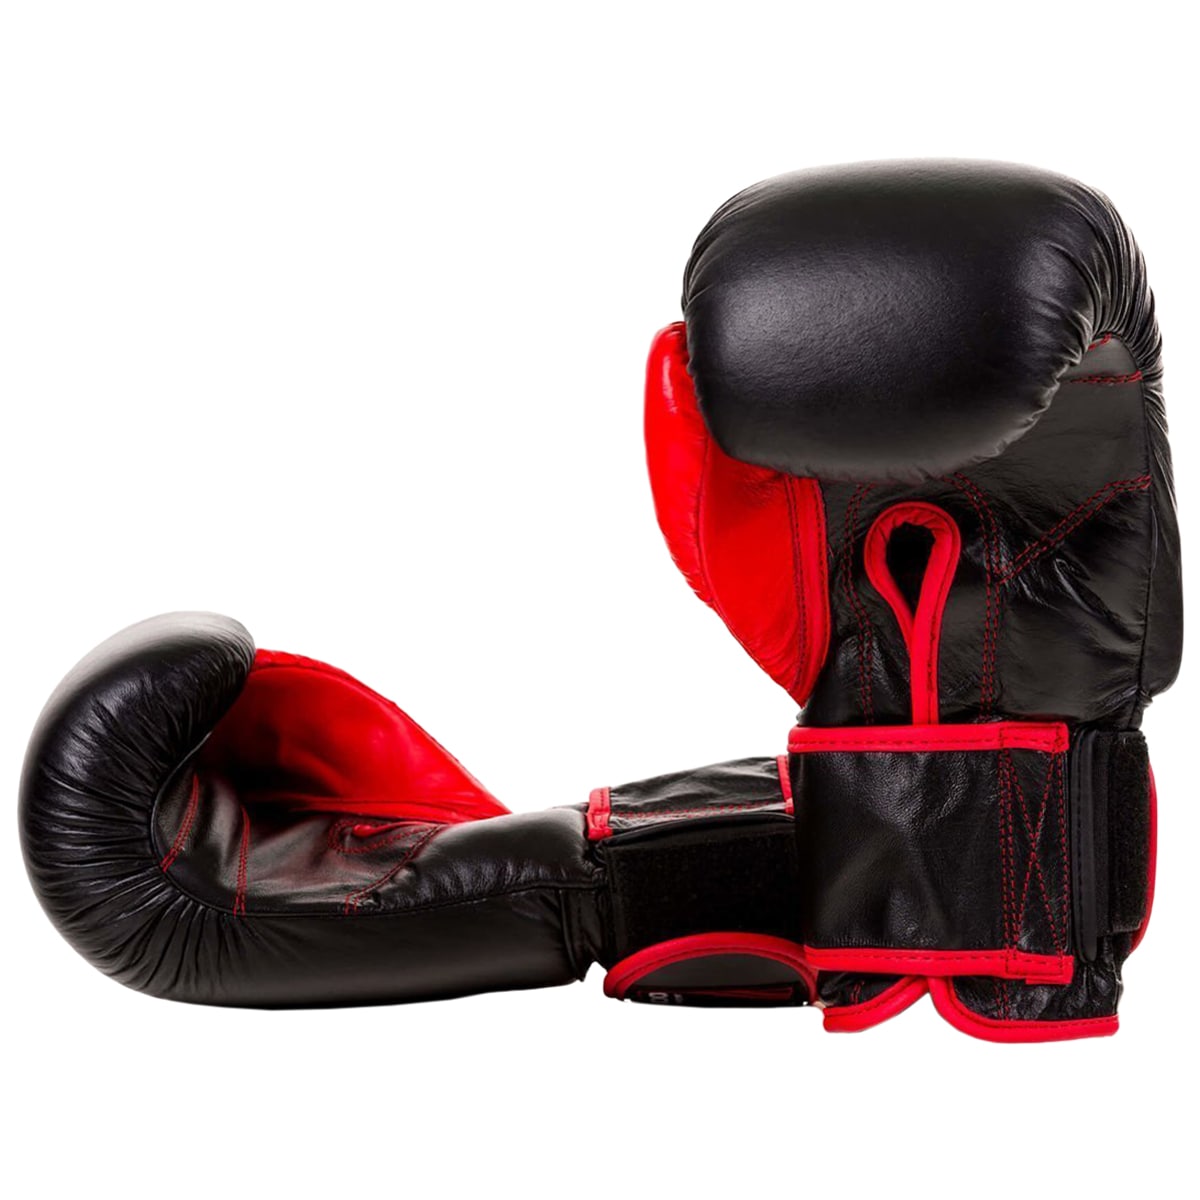 Rękawice bokserskie DBX Bushido ARB-415 10 oz - Czarne/Czerwone 